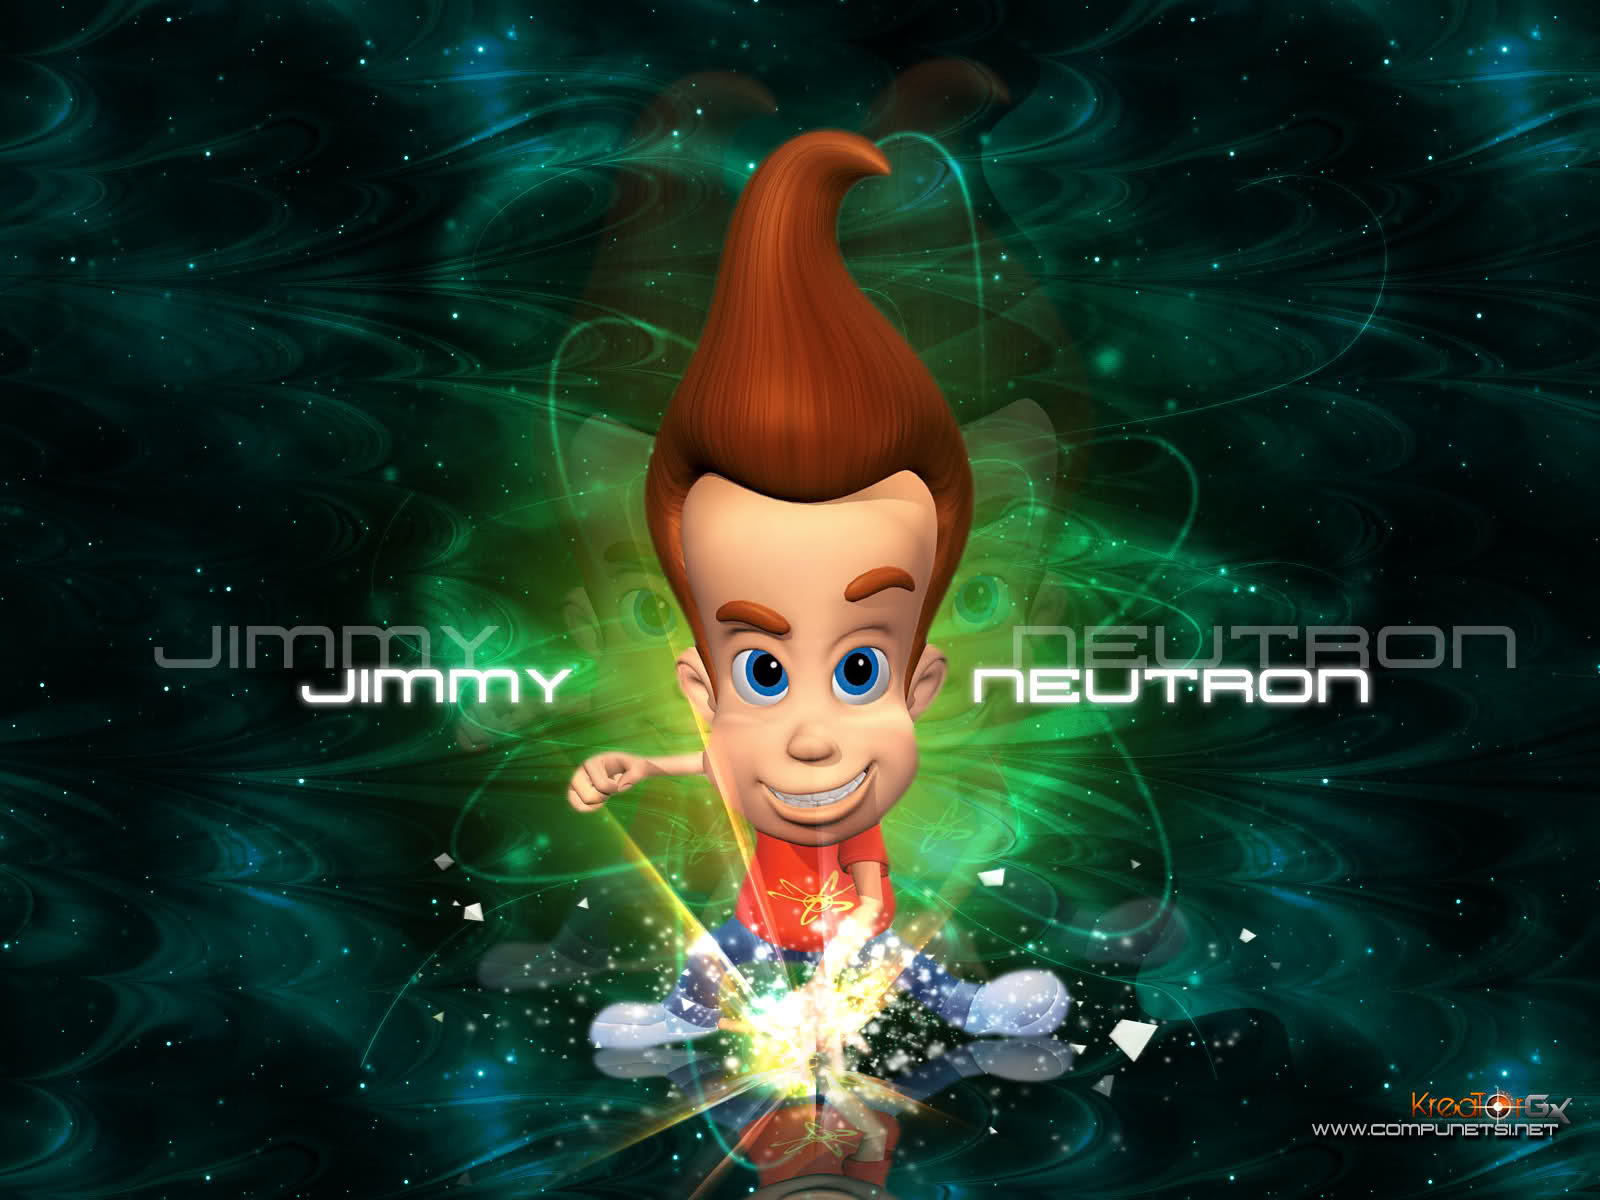 jimmy neutron hd avatar